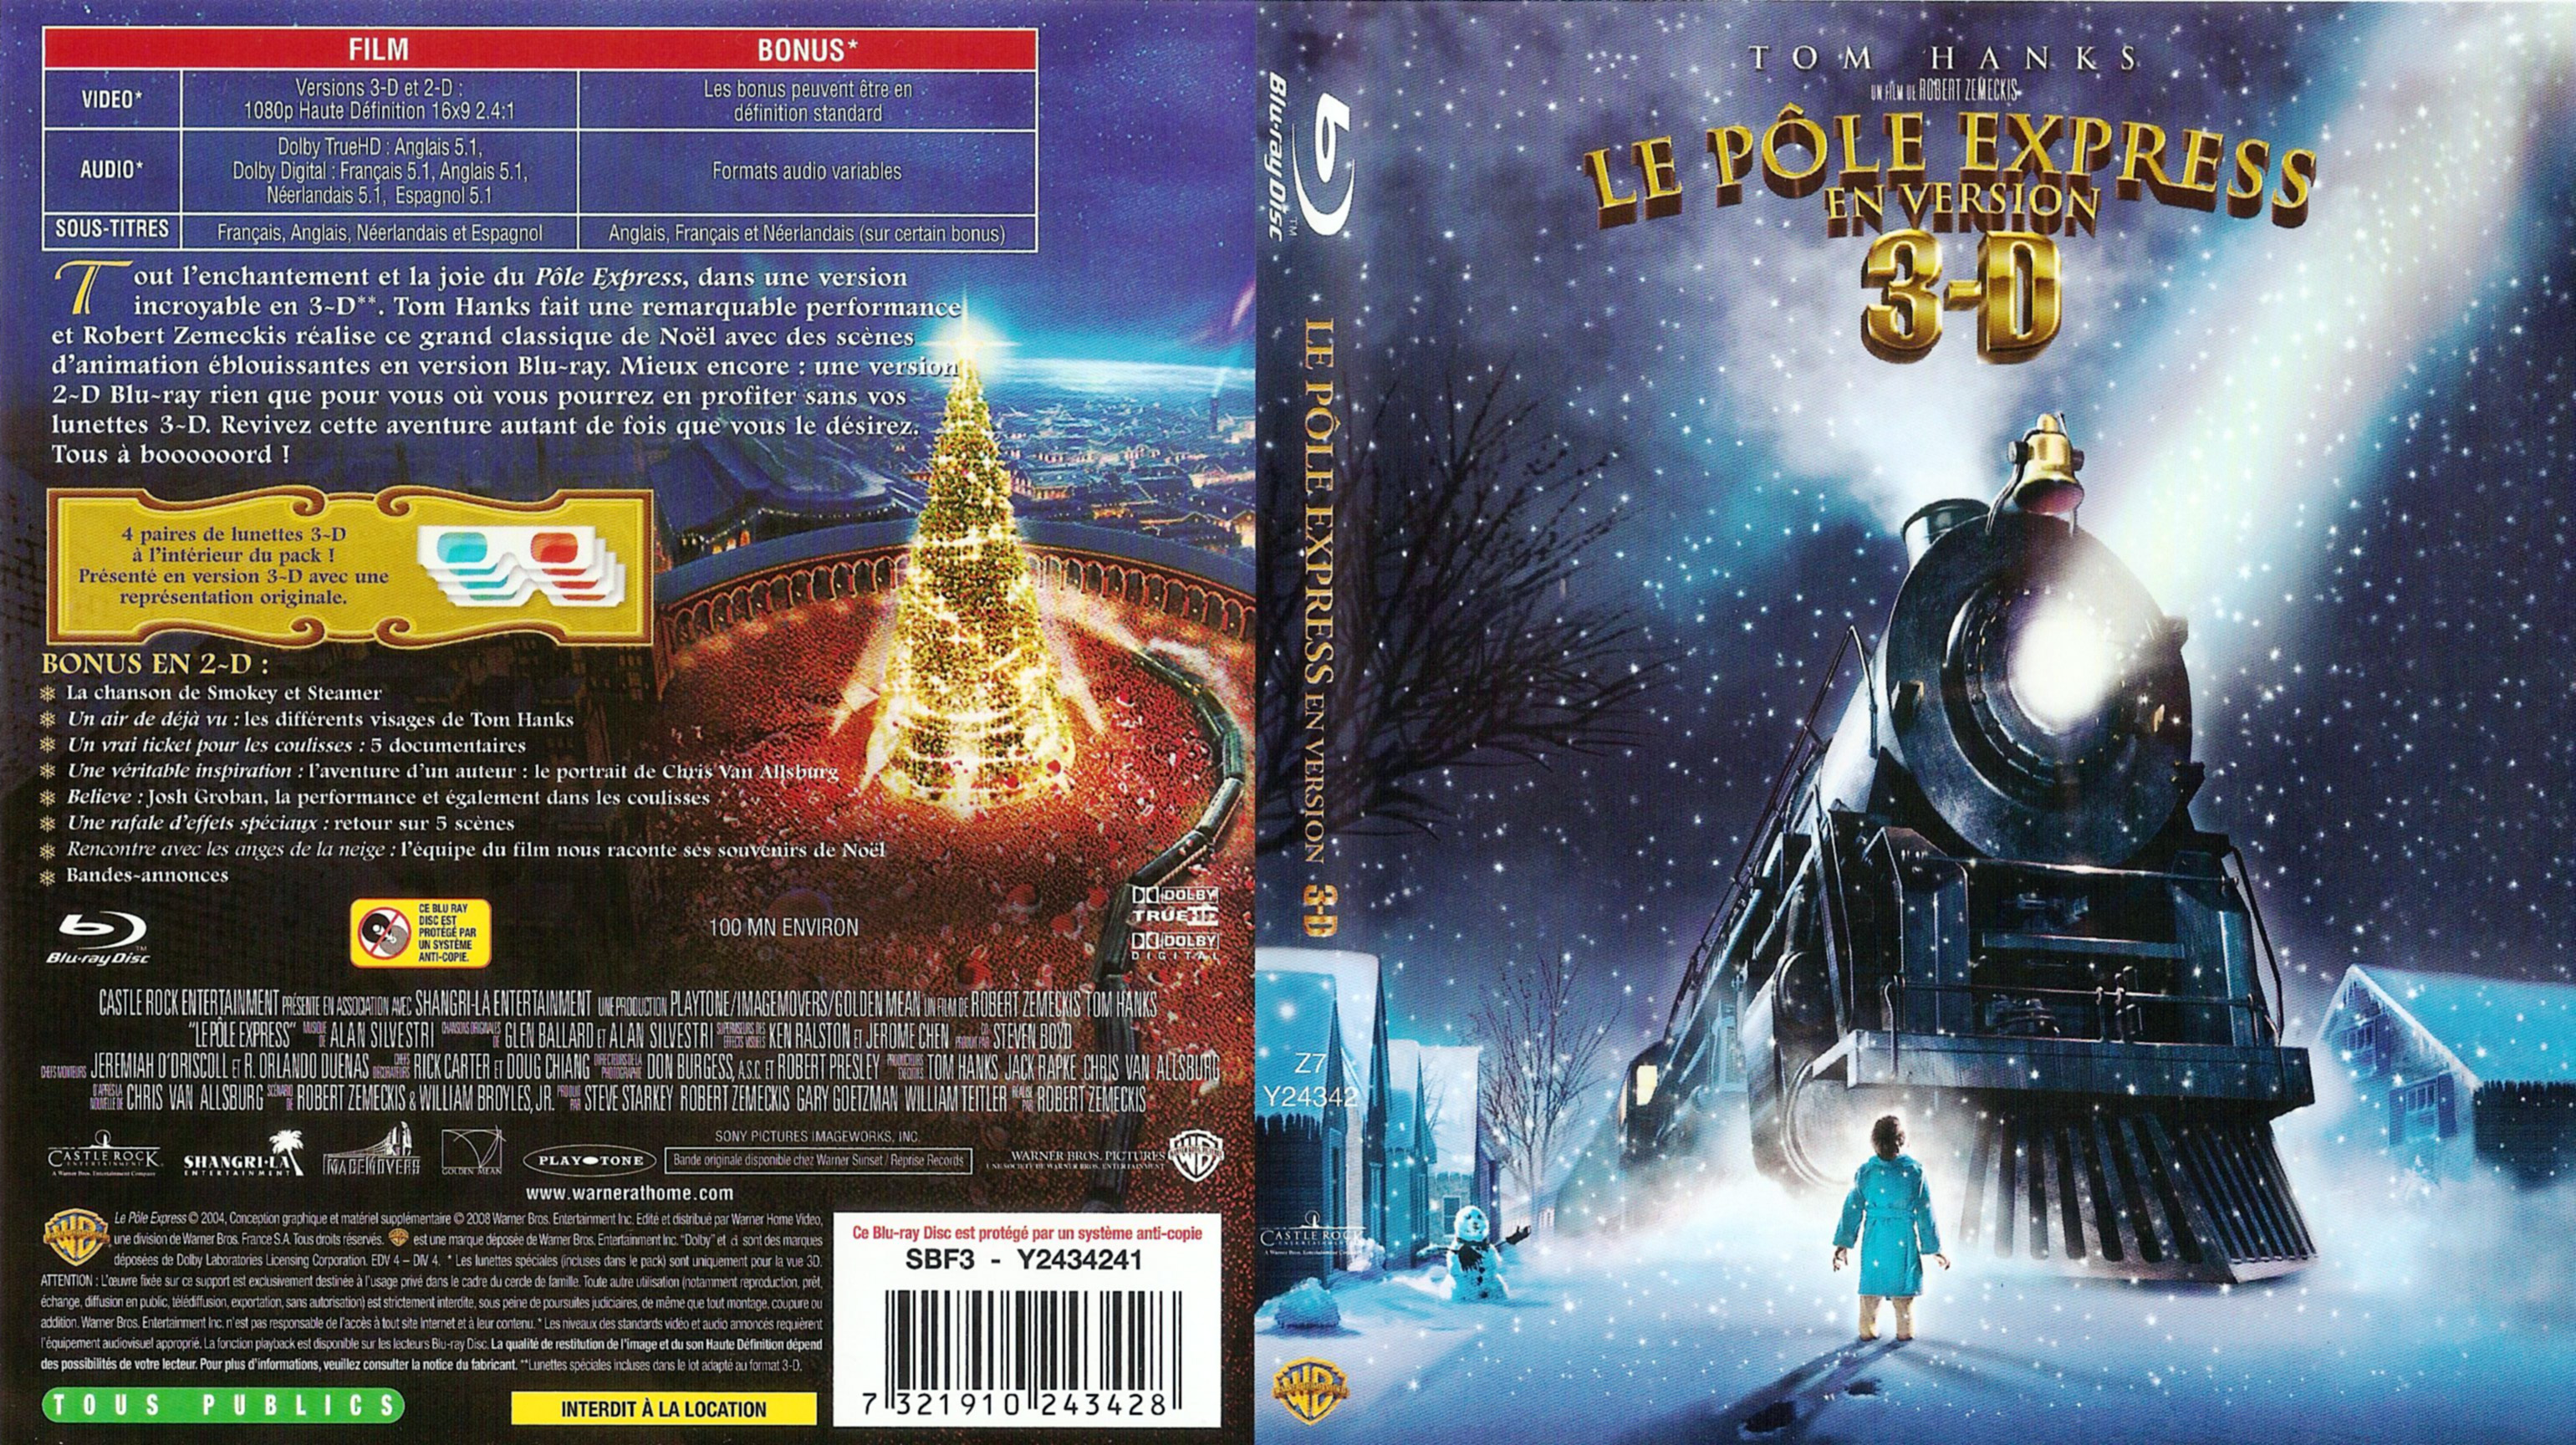 Jaquette DVD Le pole express prsent en 3D (BLU-RAY)